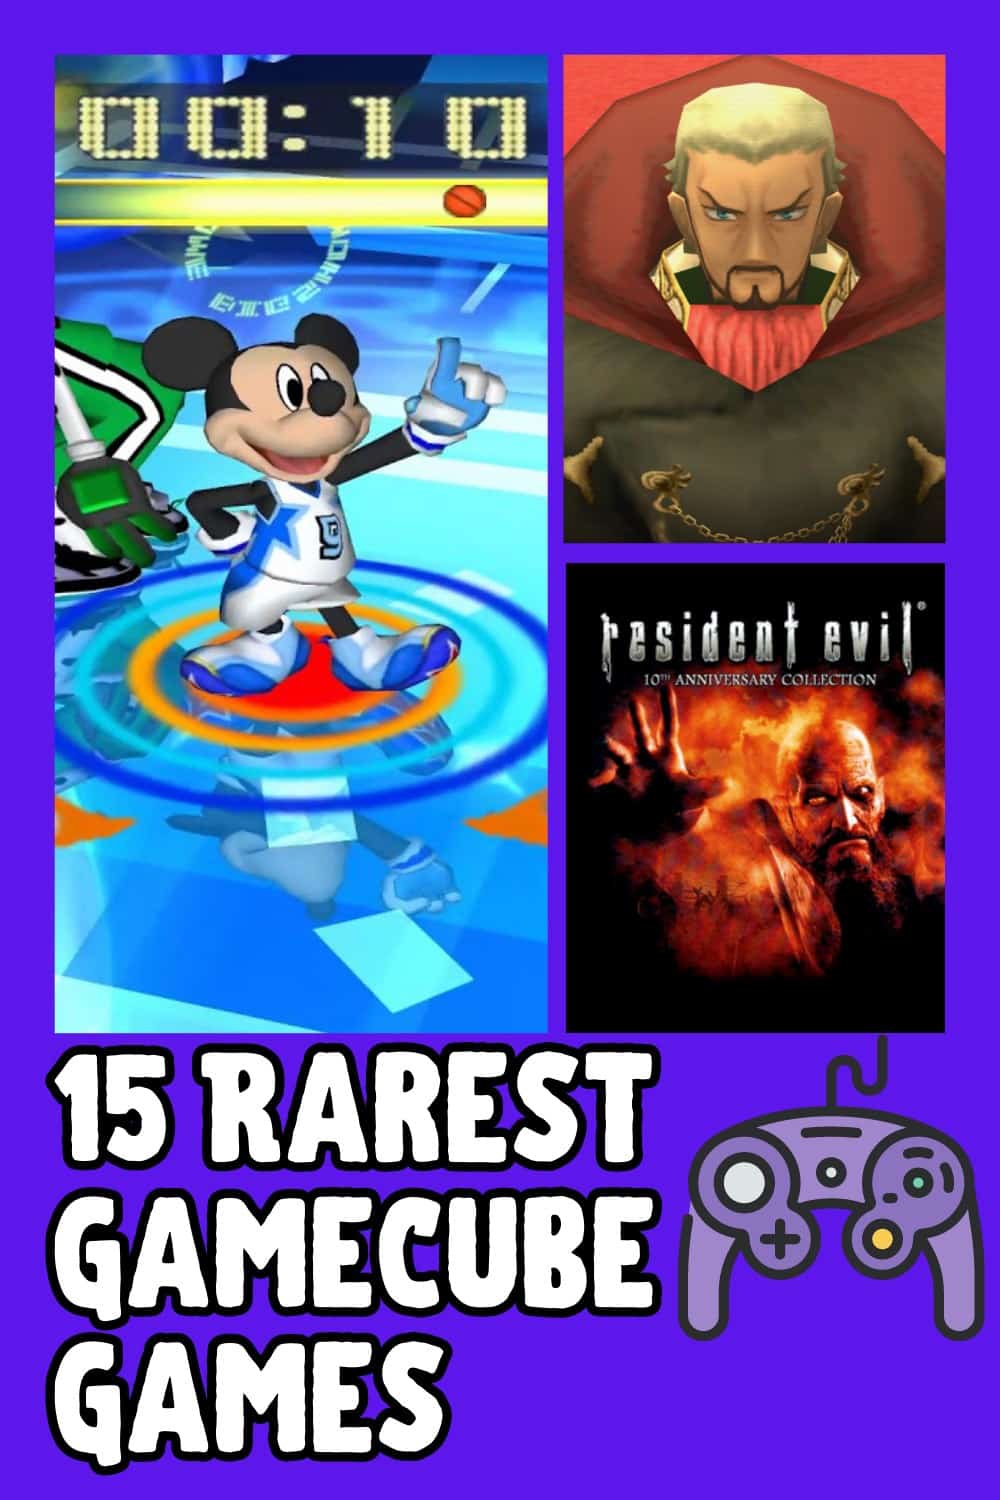 List of rare GameCube Games